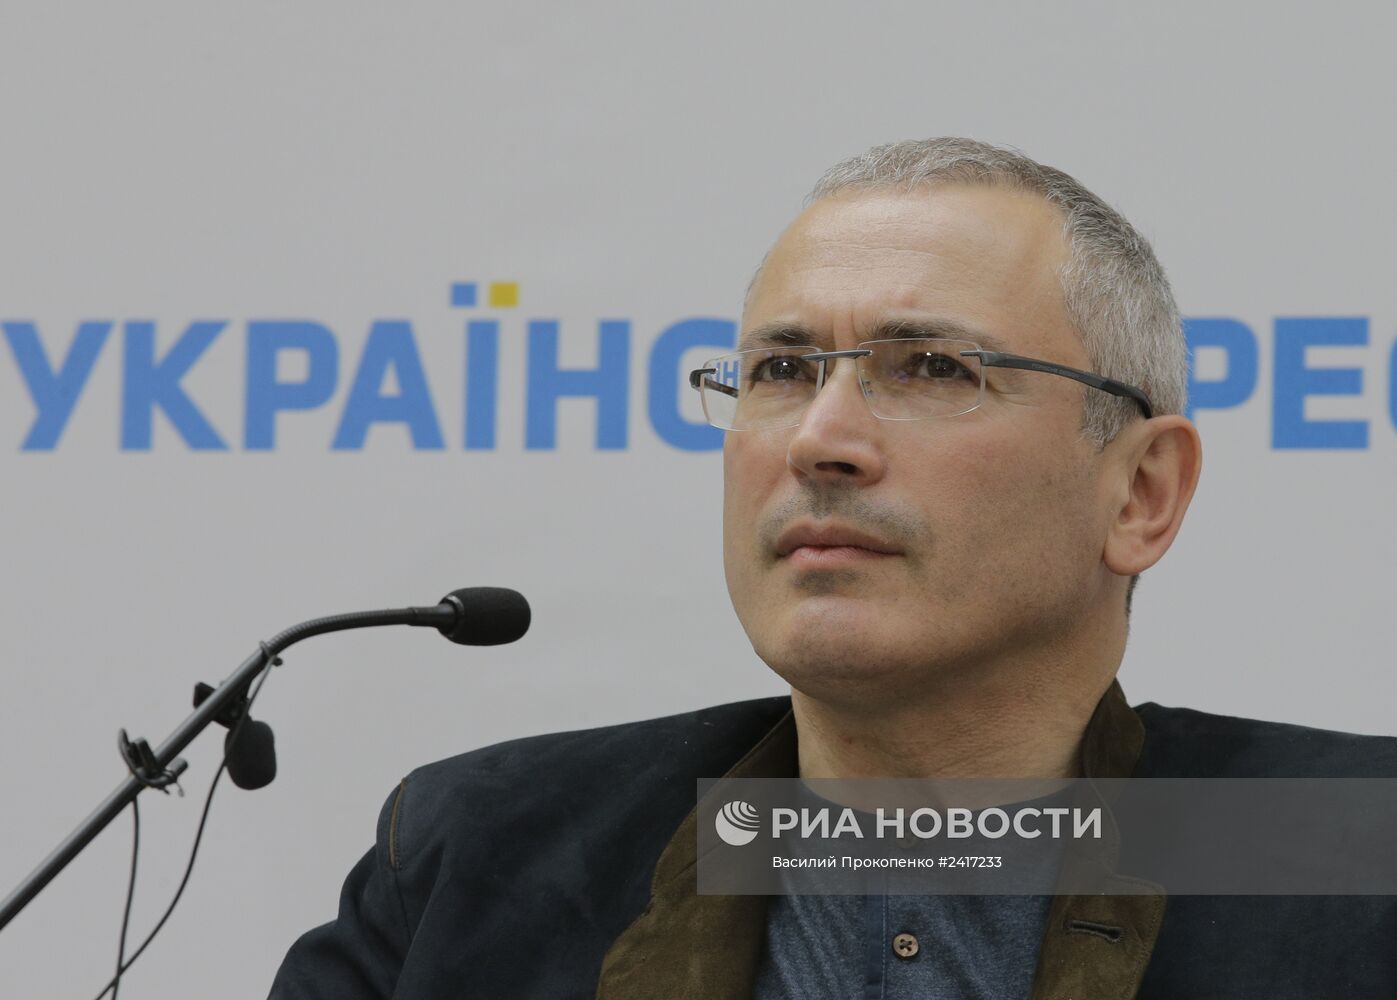 М.Ходорковский принял участие в конгрессе "Украина-Россия: диалог"